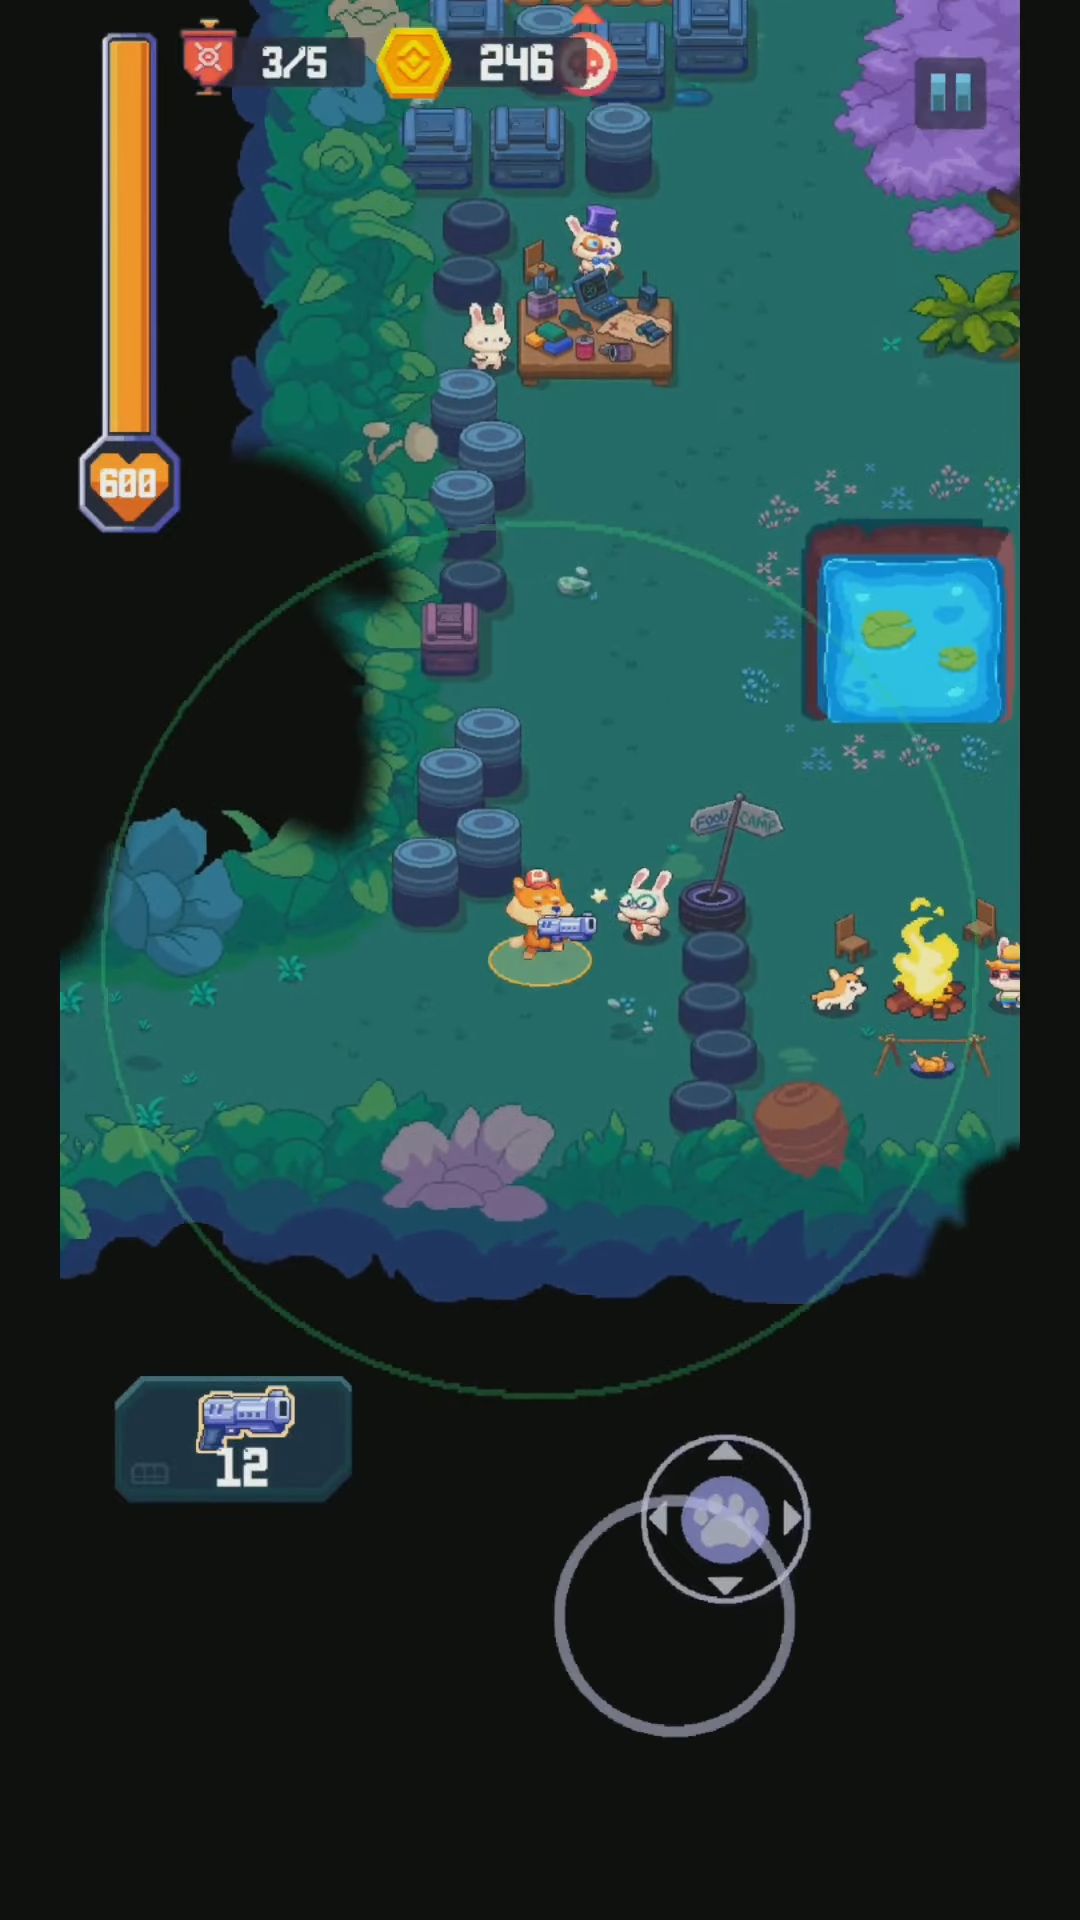 Скачать Wild Gunner - Rogue Adventure: Android Изометрические шутеры игра на телефон и планшет.